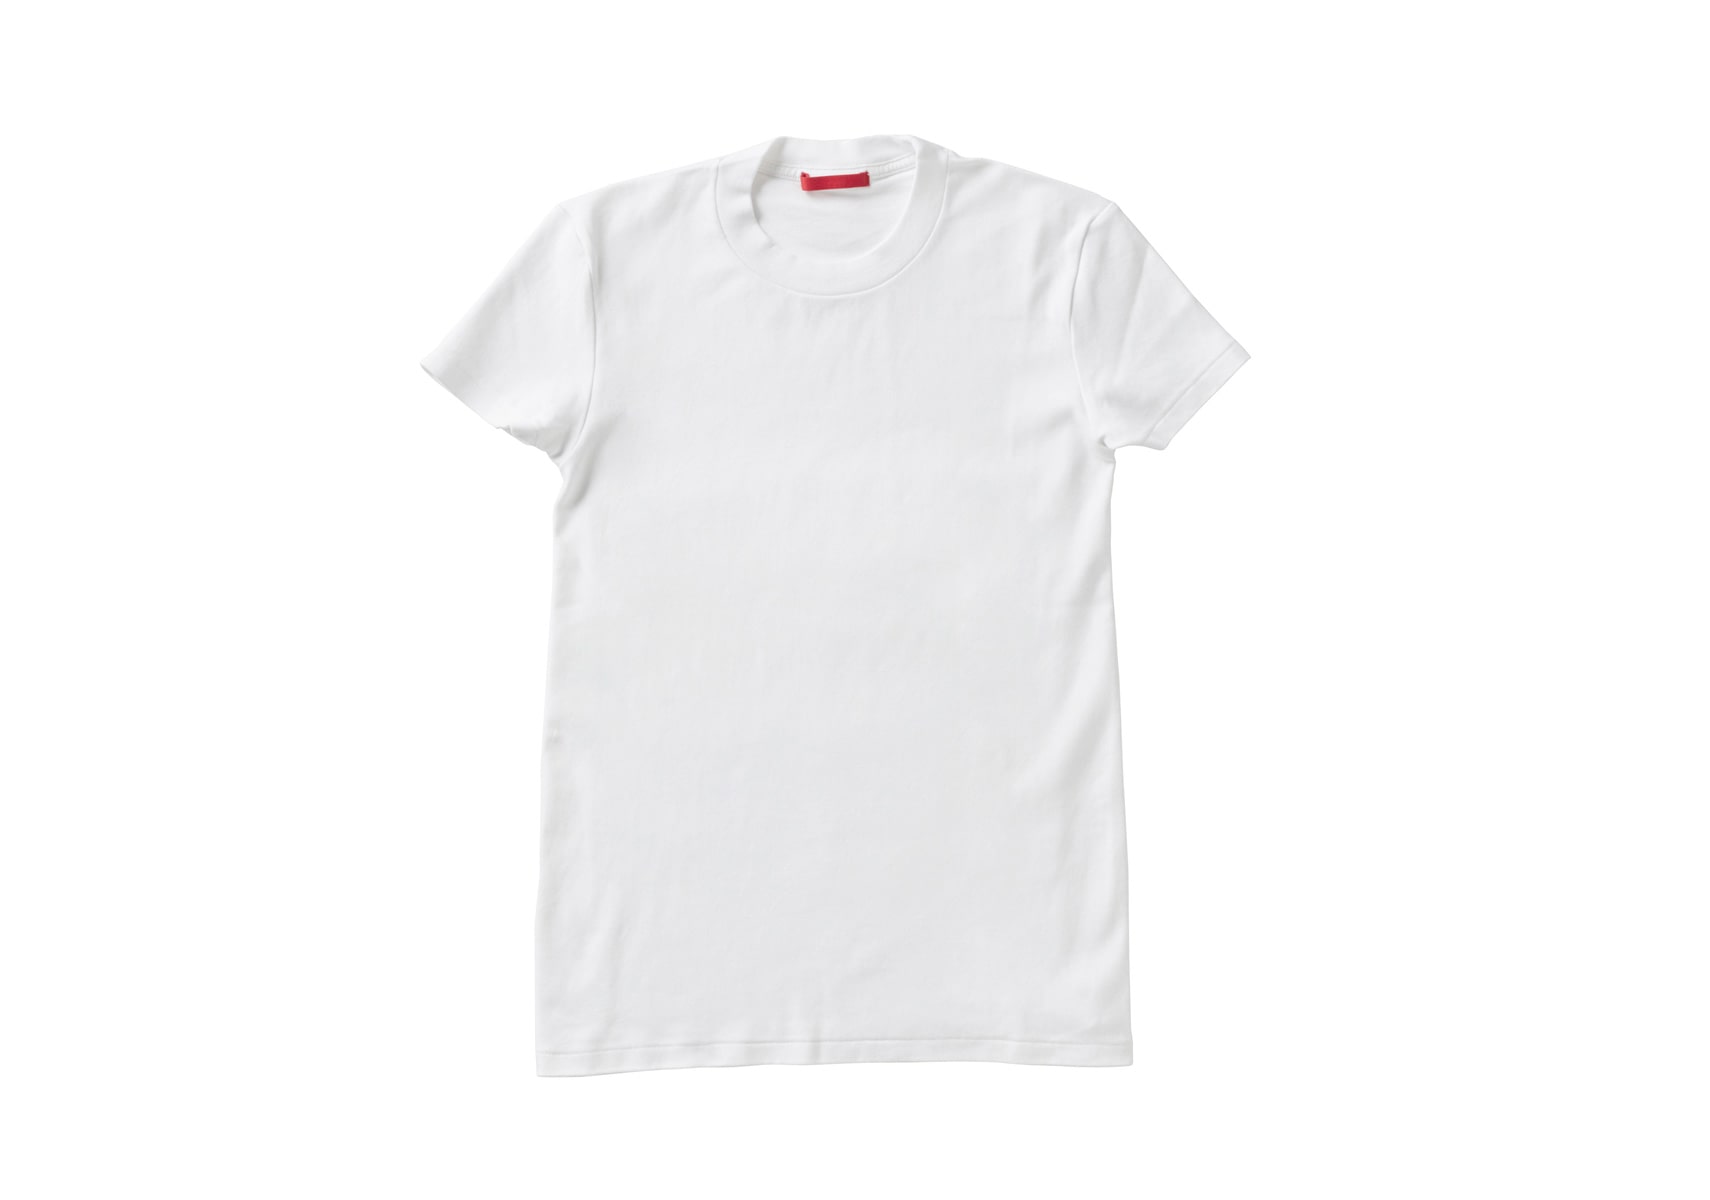 ixc.  (イクスシー) -  オリジナルルームウェア 半袖Tシャツ (WOMEN) ブラック